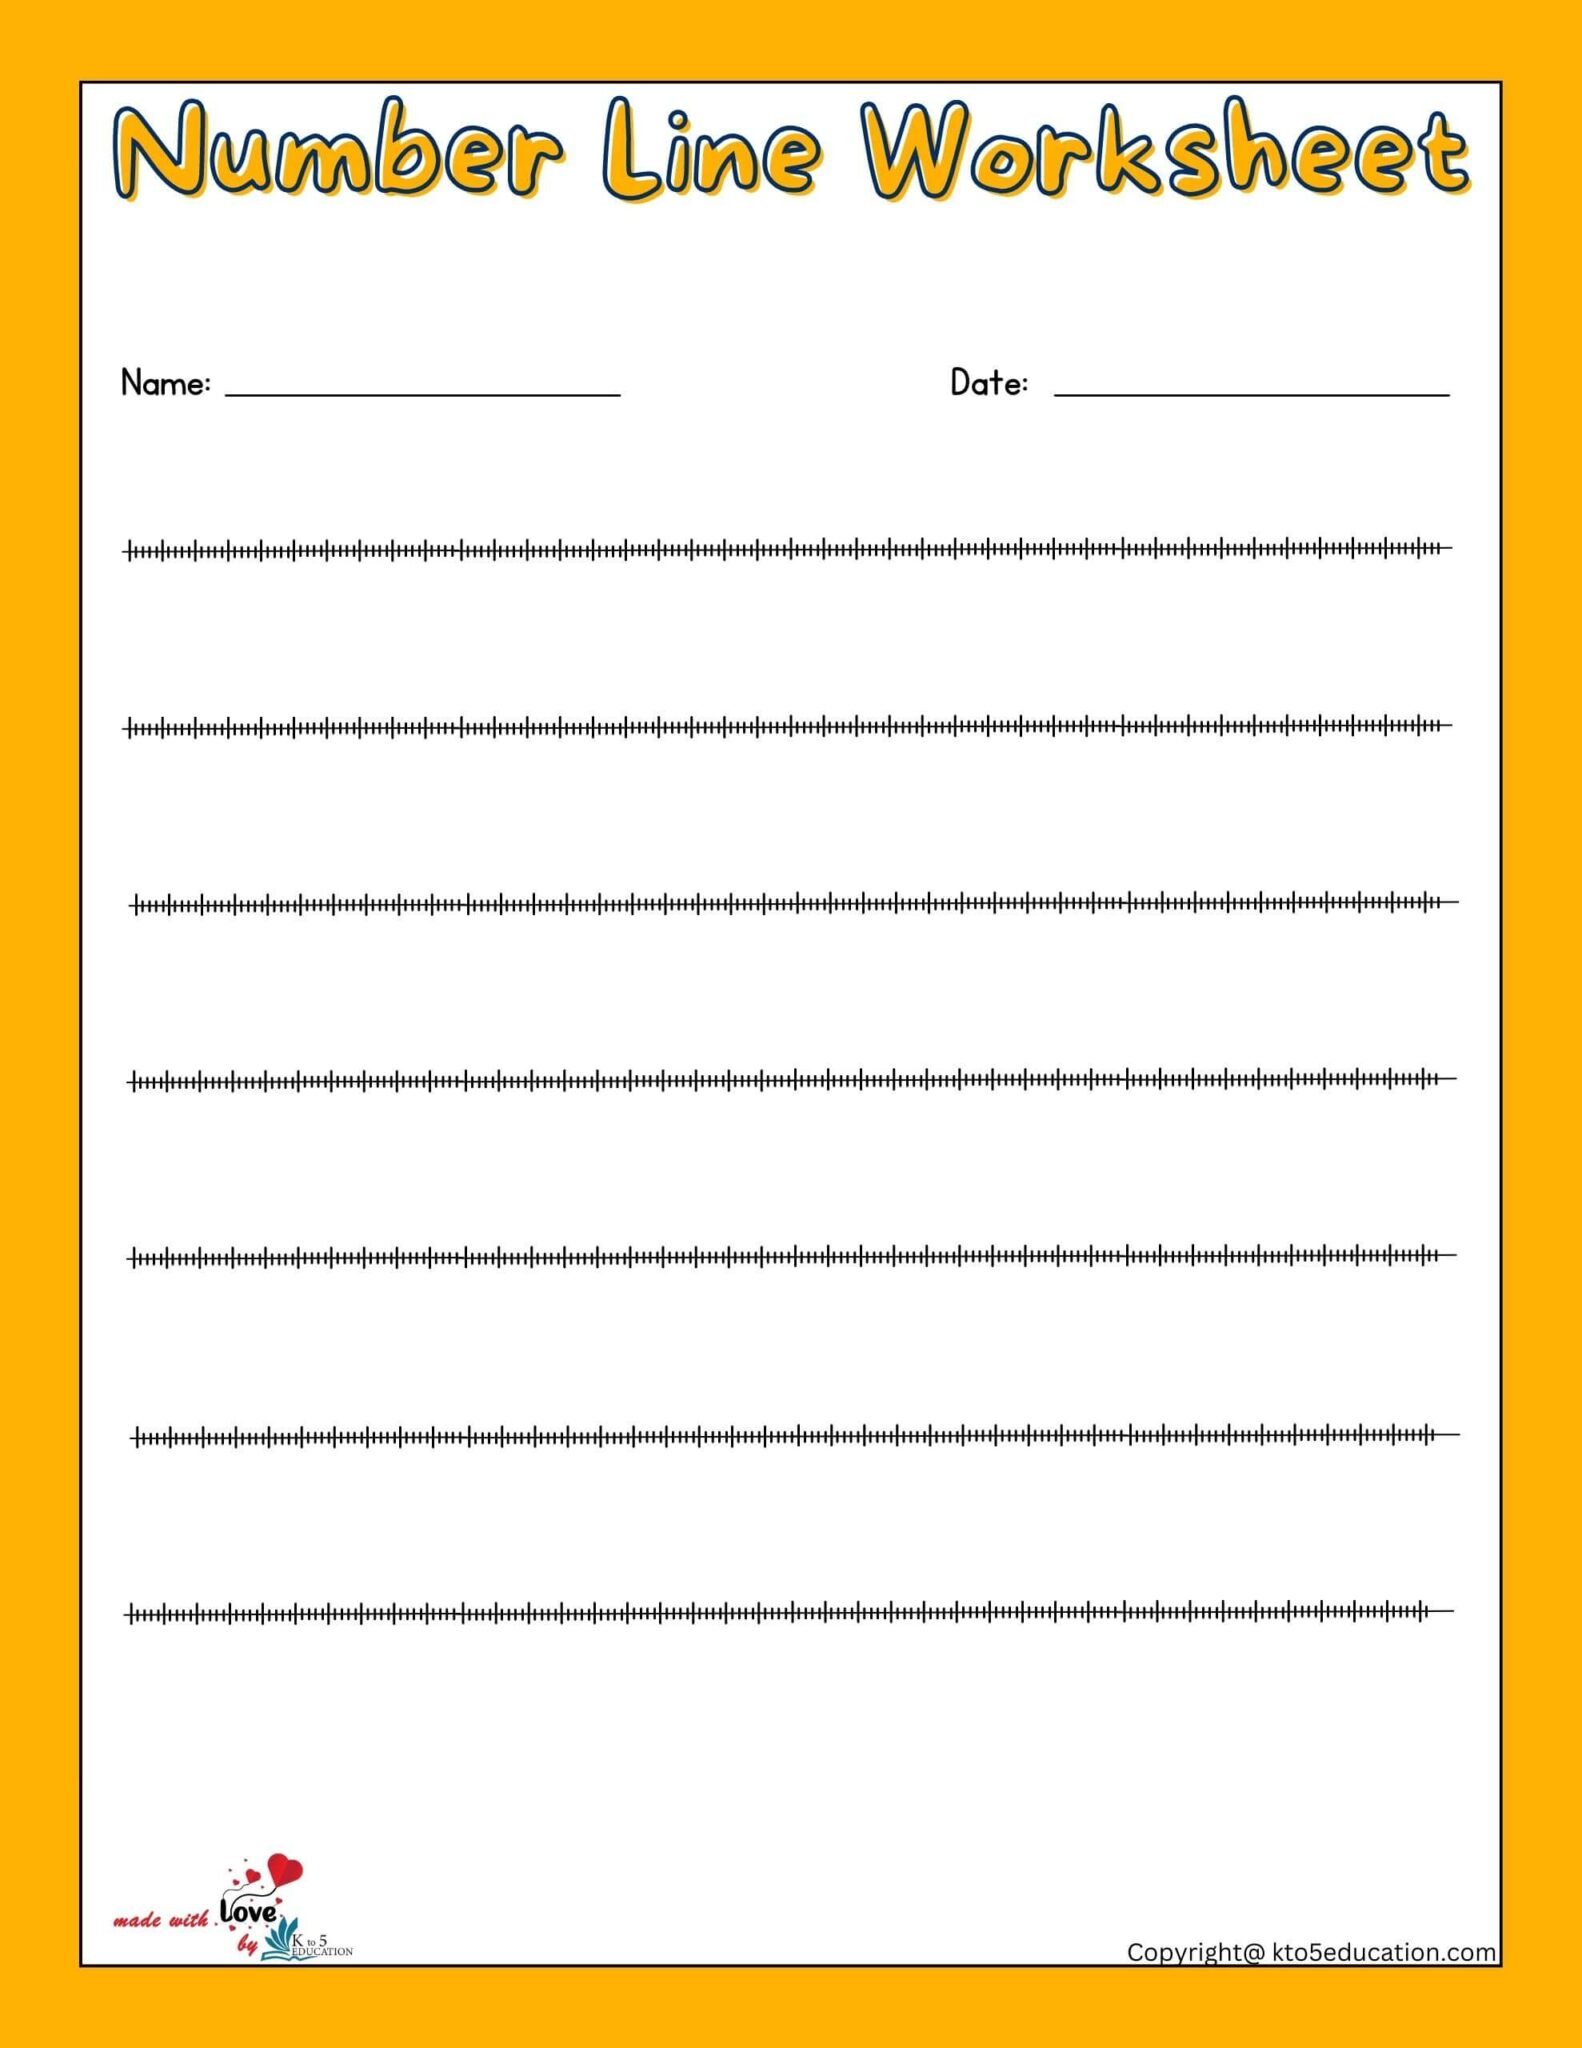 free-blank-number-lines-worksheet-1-200-free-download